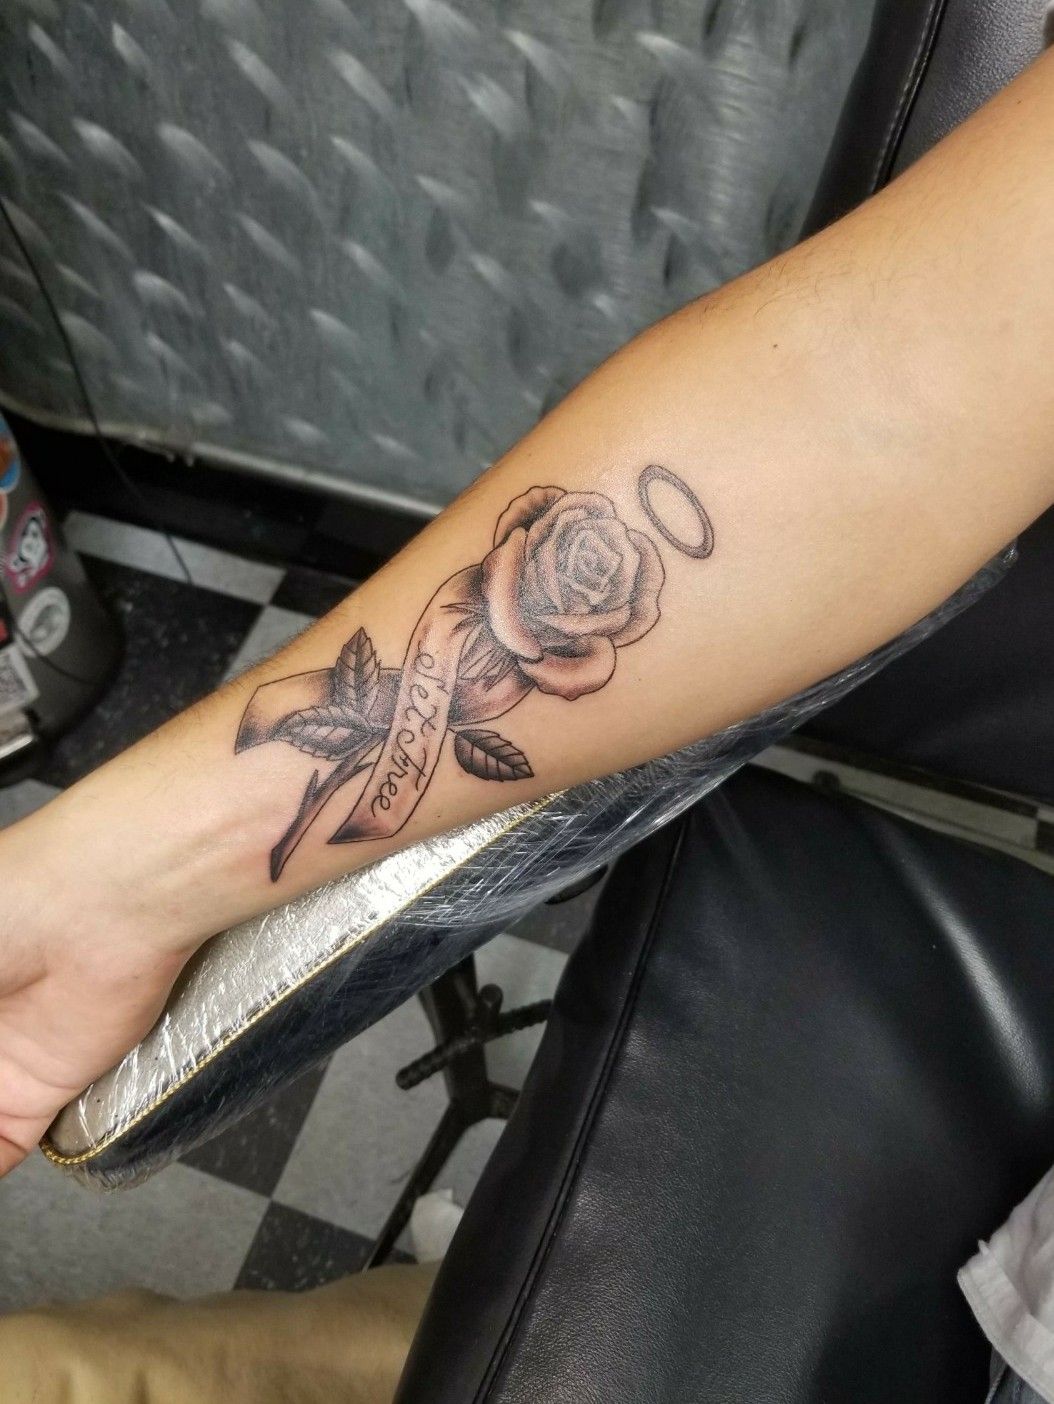 Beautiful Honoring Grandma Tattoos  Ideas  TattooGlee  Grandma tattoos  Tattoos for daughters Matching tattoos